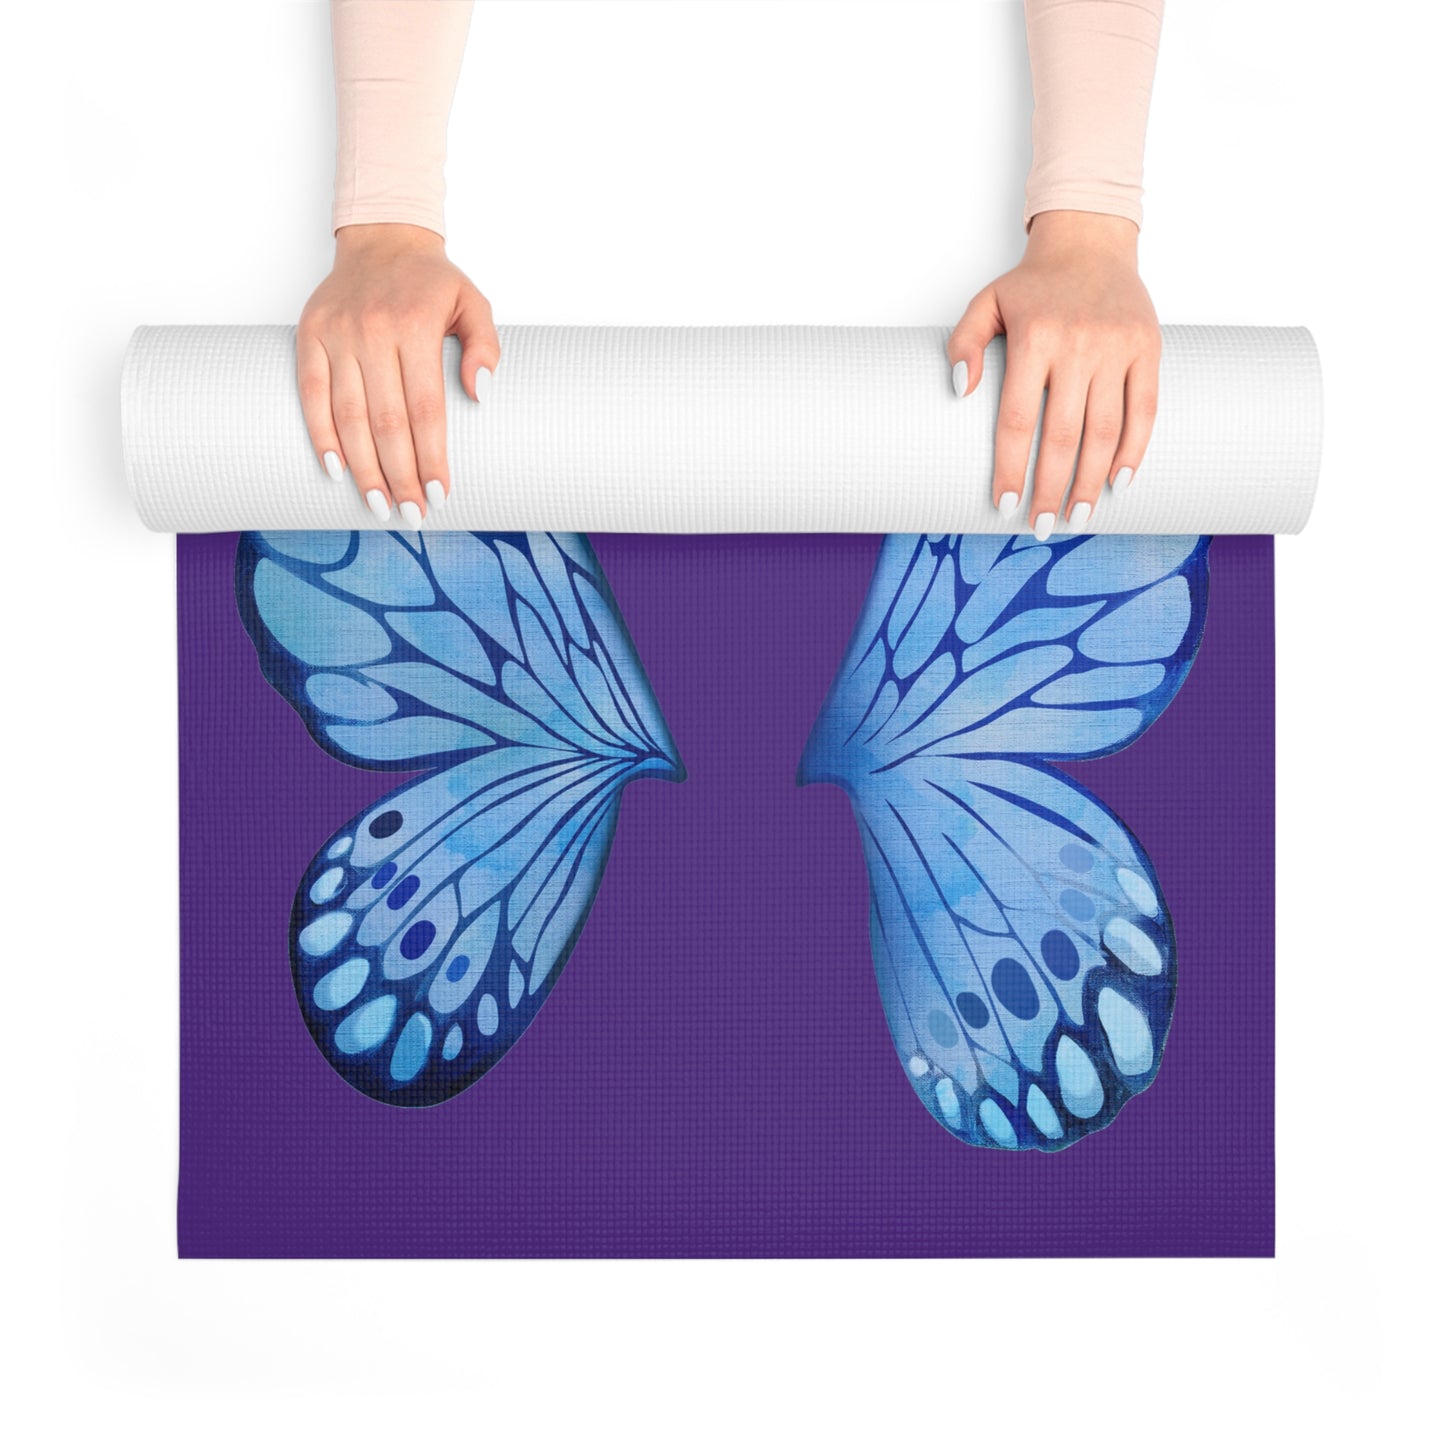 Blue Butterfly Foam Yoga Mat